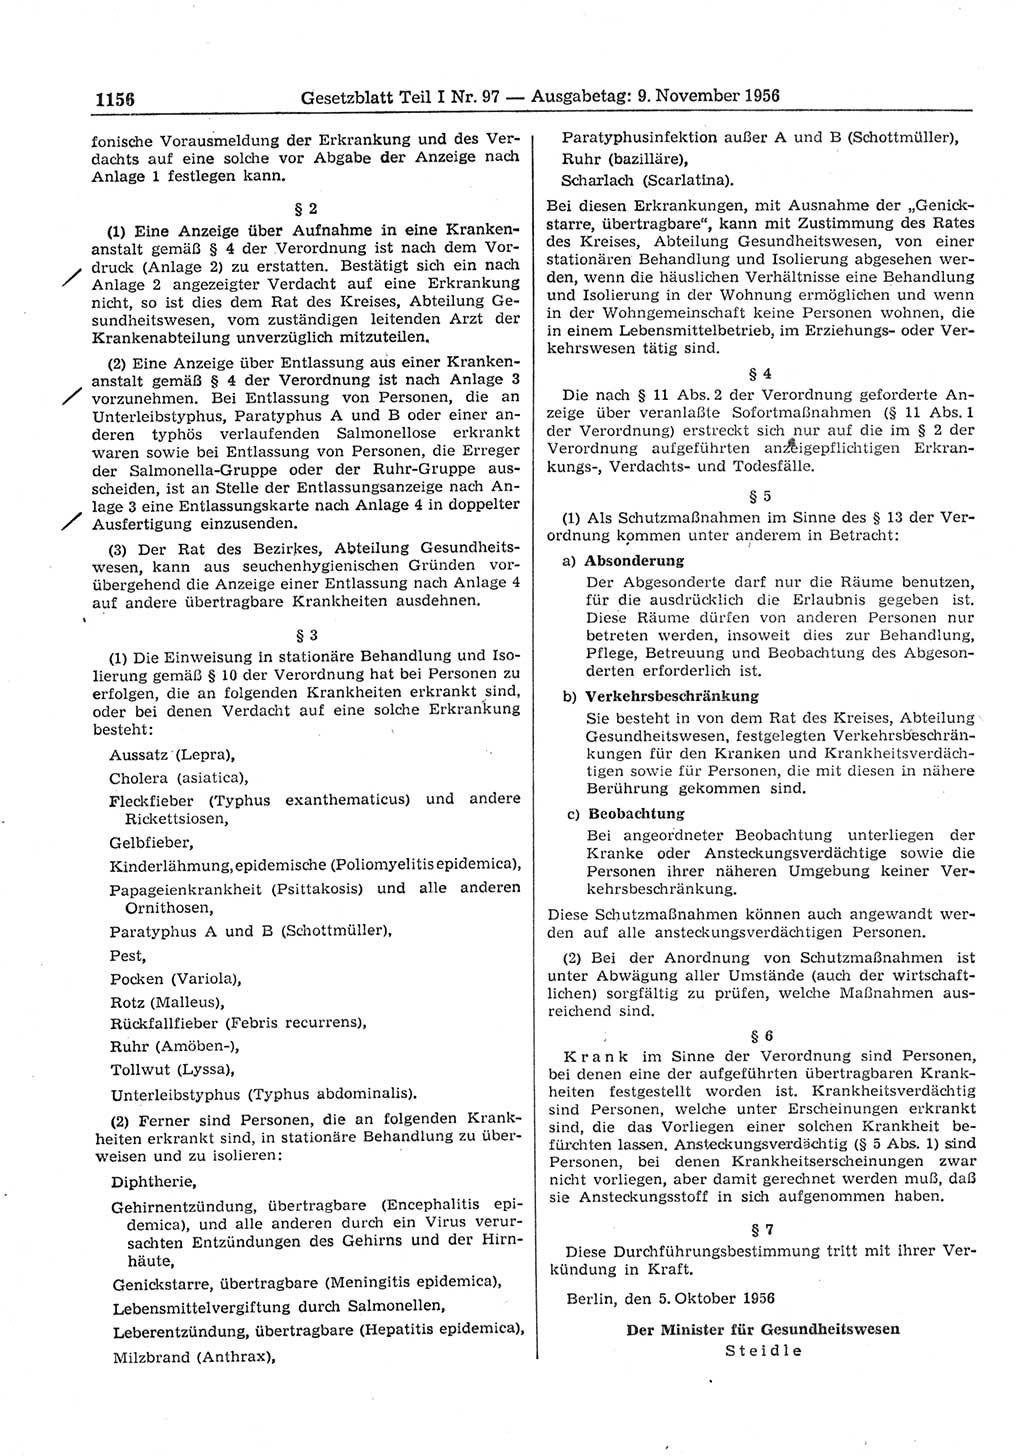 Gesetzblatt (GBl.) der Deutschen Demokratischen Republik (DDR) Teil Ⅰ 1956, Seite 1156 (GBl. DDR Ⅰ 1956, S. 1156)